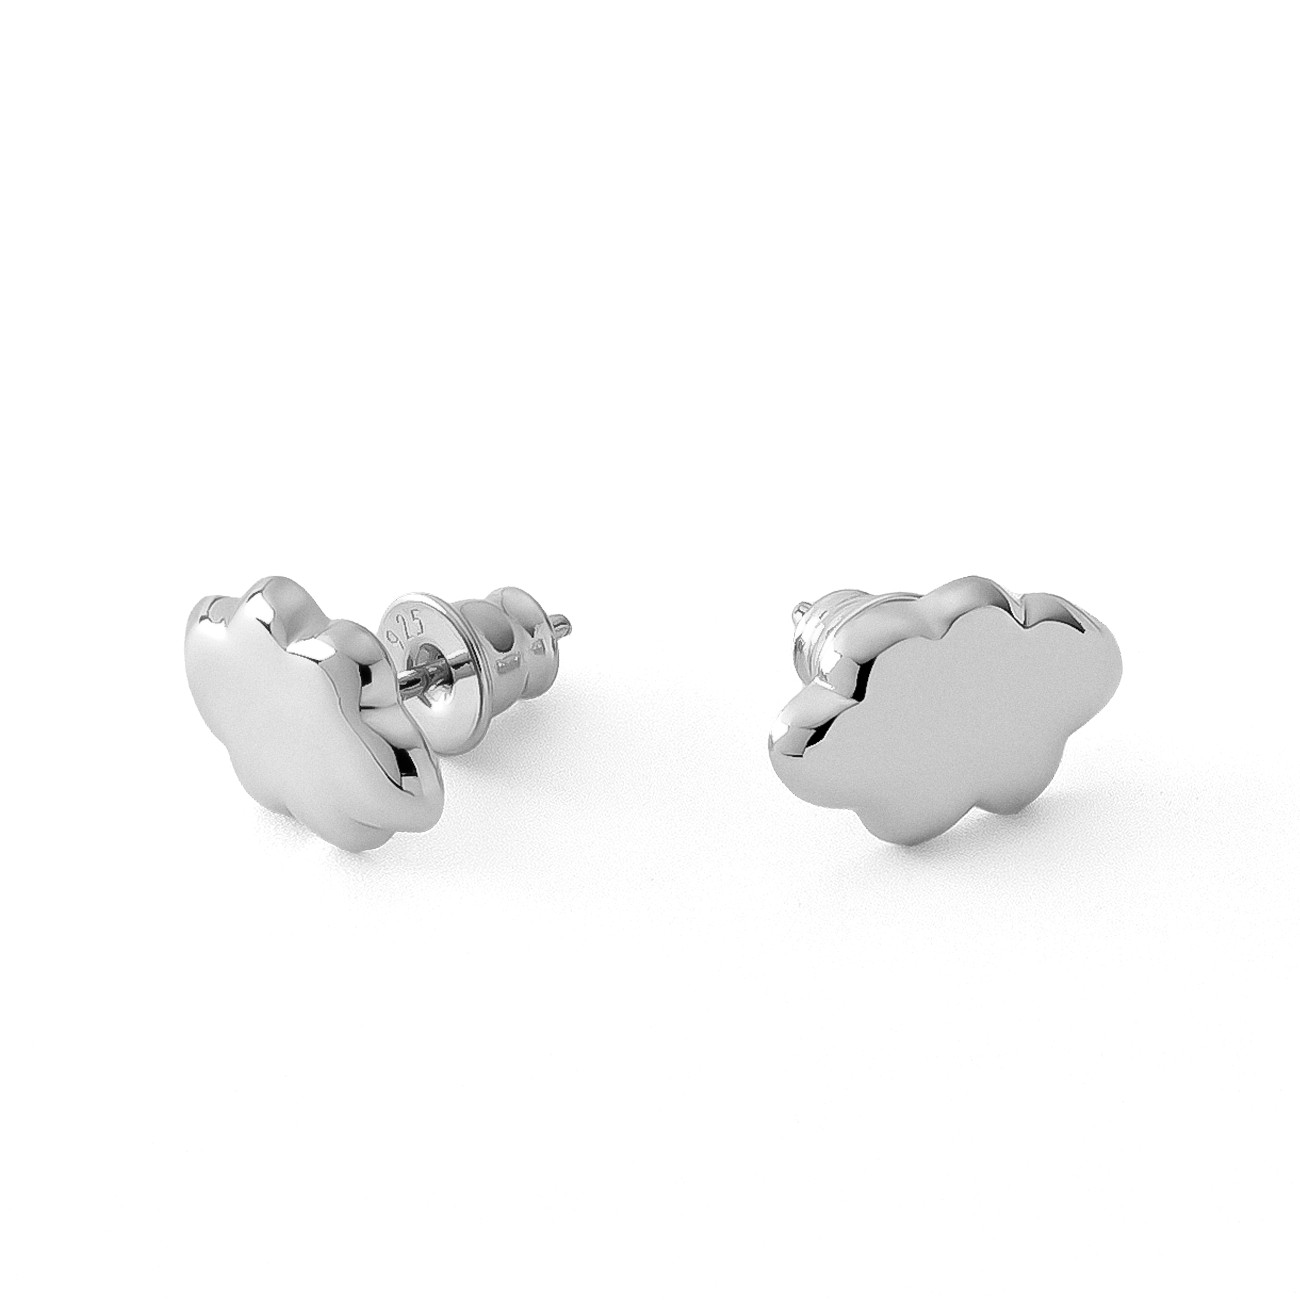 Silver cloud earrings, AUGUSTYNKA x GIORRE